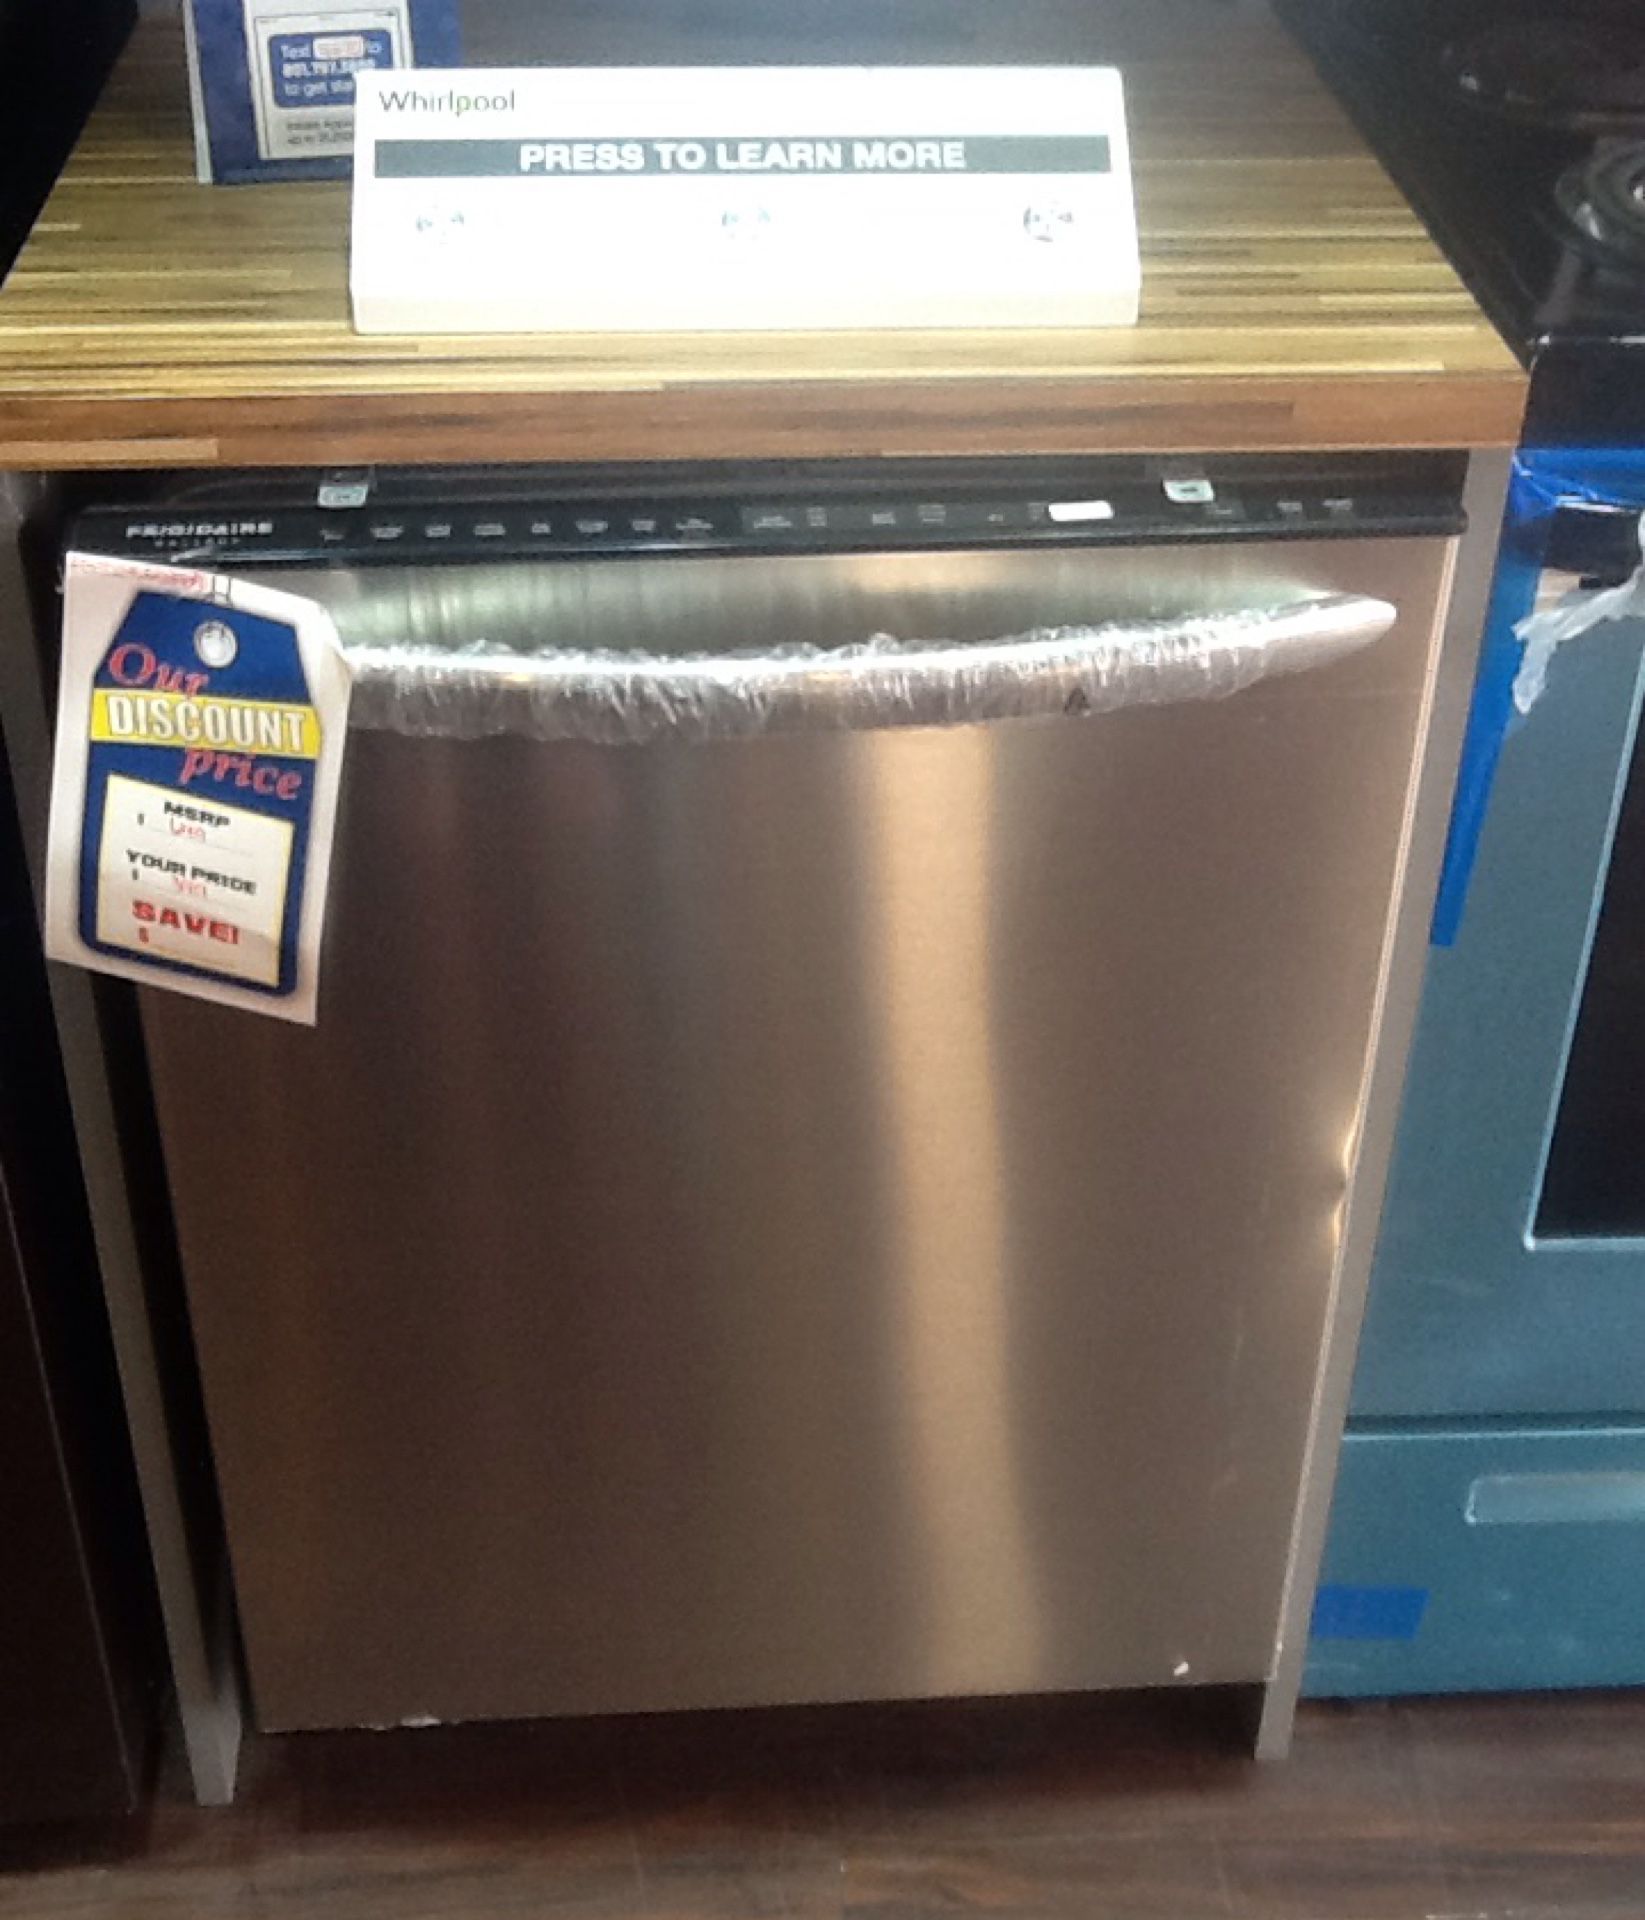 New open box frigidaire dishwasher